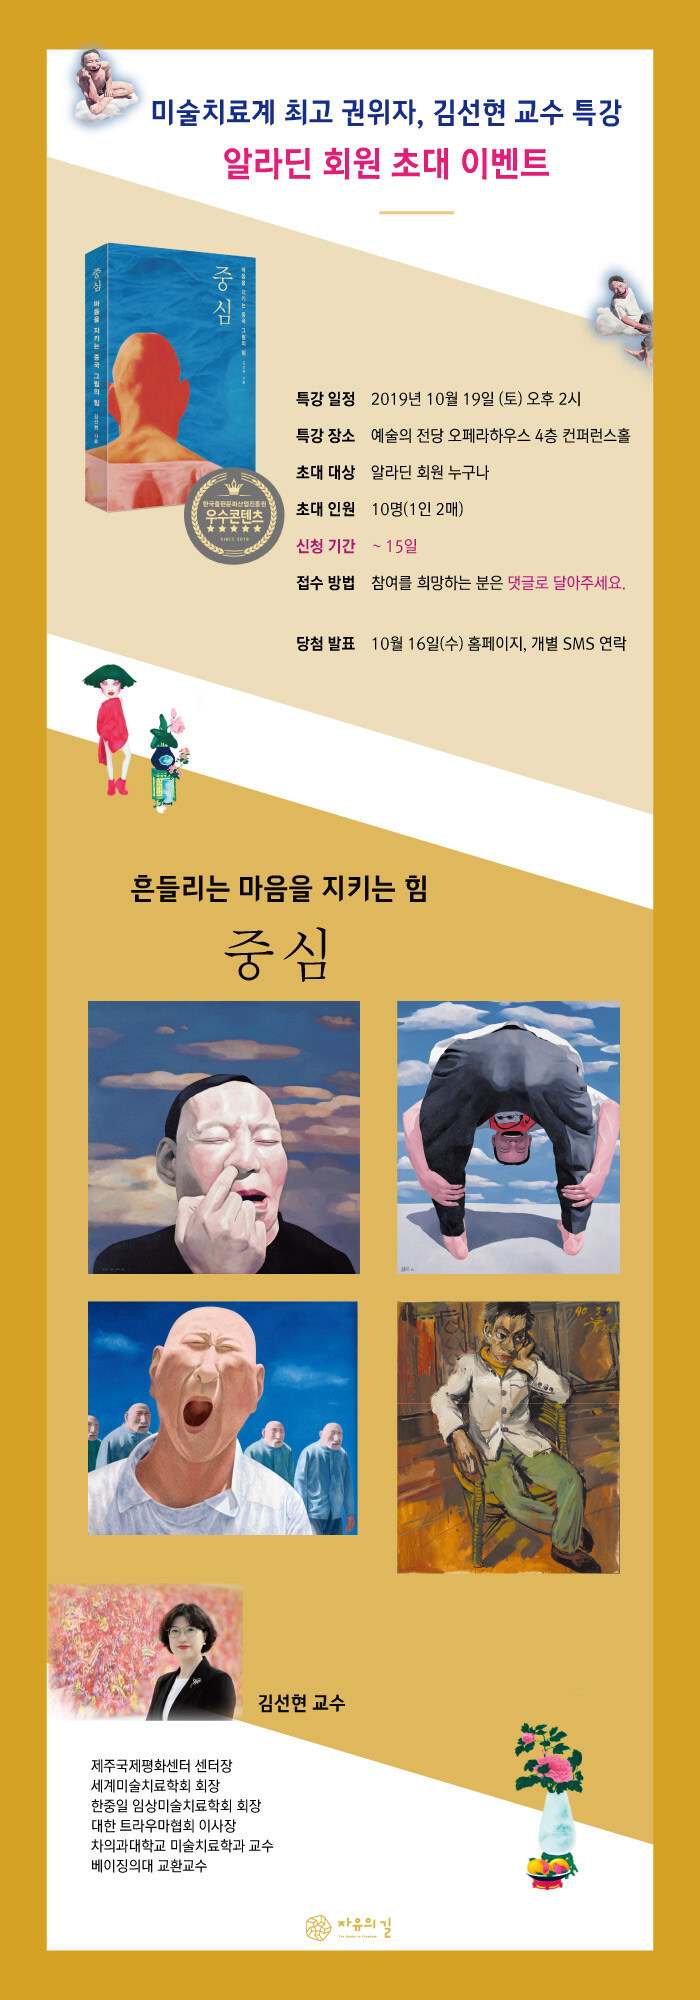 <중심> 저자 강연회